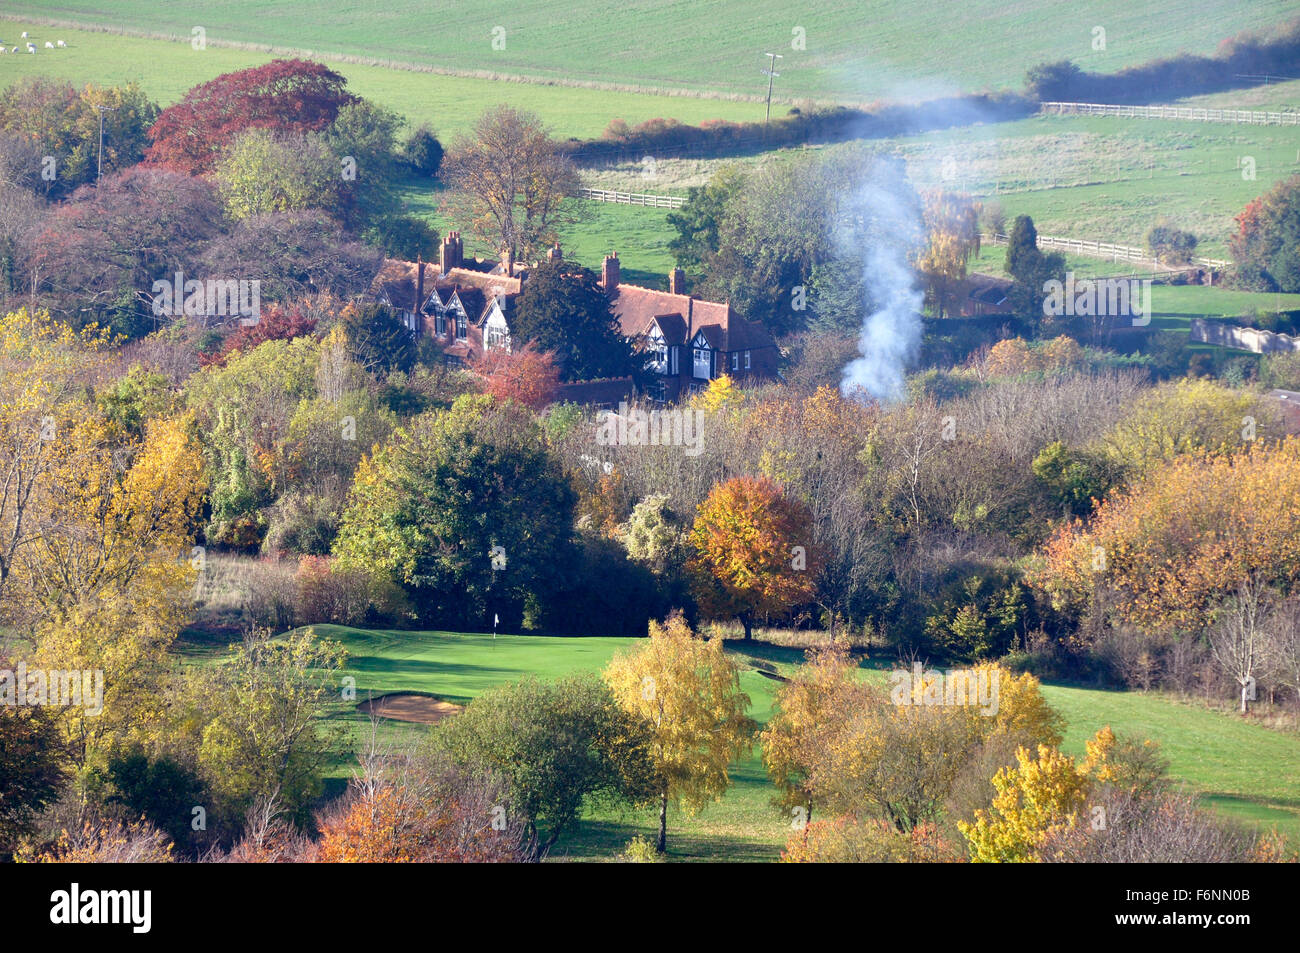 Argent - Chiltern Hills - Coombe sur colline - vue sur l'automne dans les arbres - cottages toits - propagation de la fumée d'un feu de joie Banque D'Images